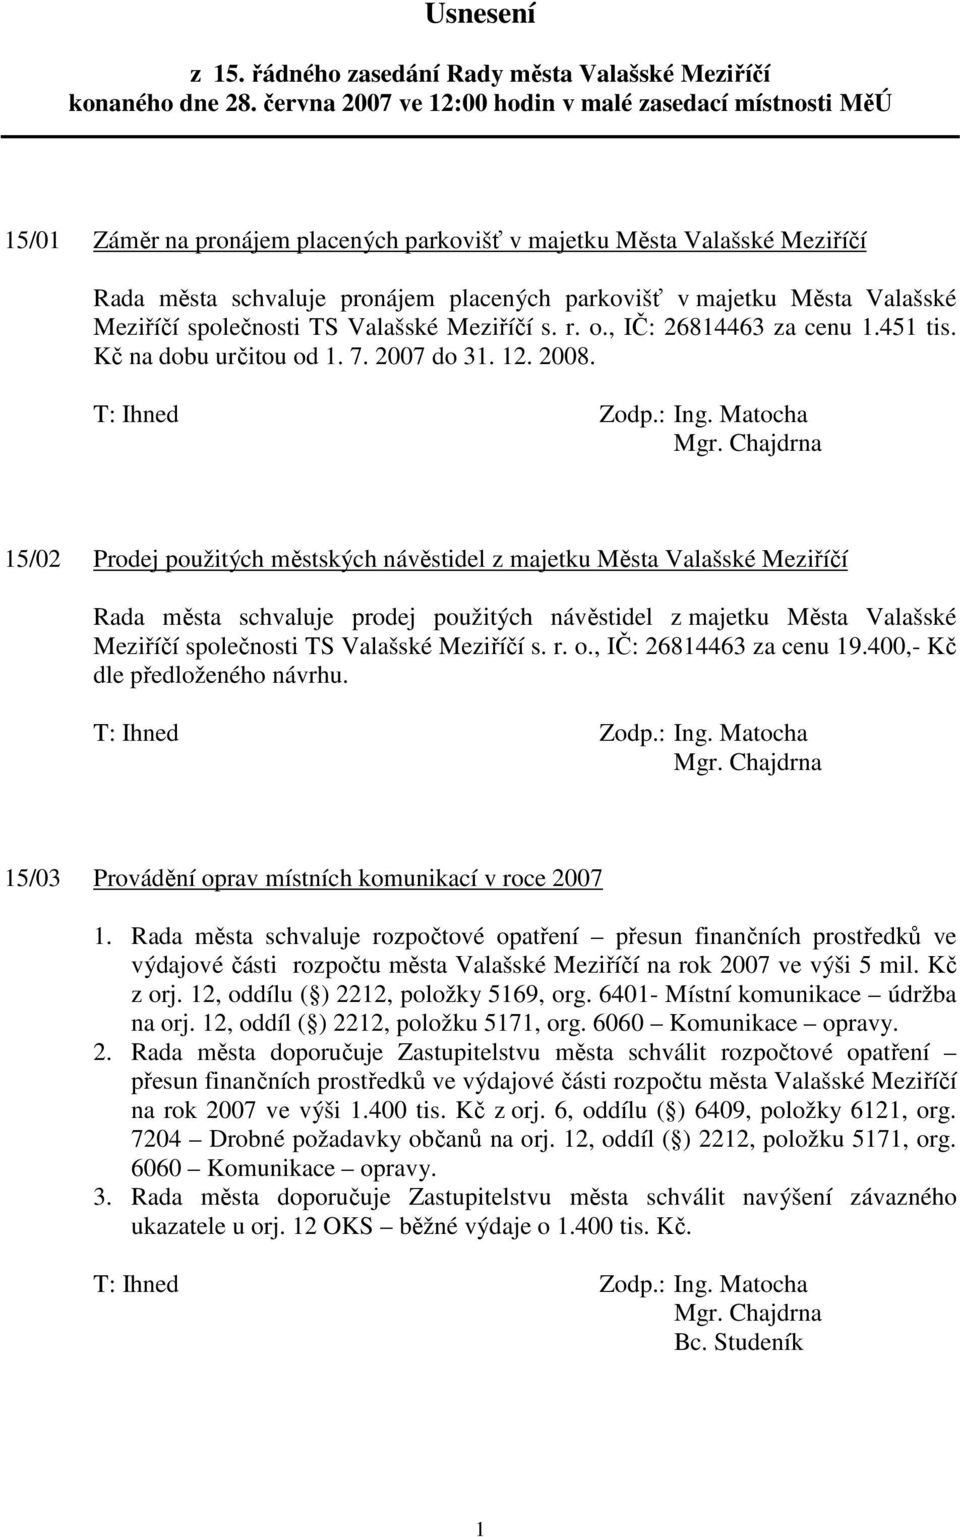 Města Valašské Meziříčí společnosti TS Valašské Meziříčí s. r. o., IČ: 26814463 za cenu 1.451 tis. Kč na dobu určitou od 1. 7. 2007 do 31. 12. 2008. Mgr.